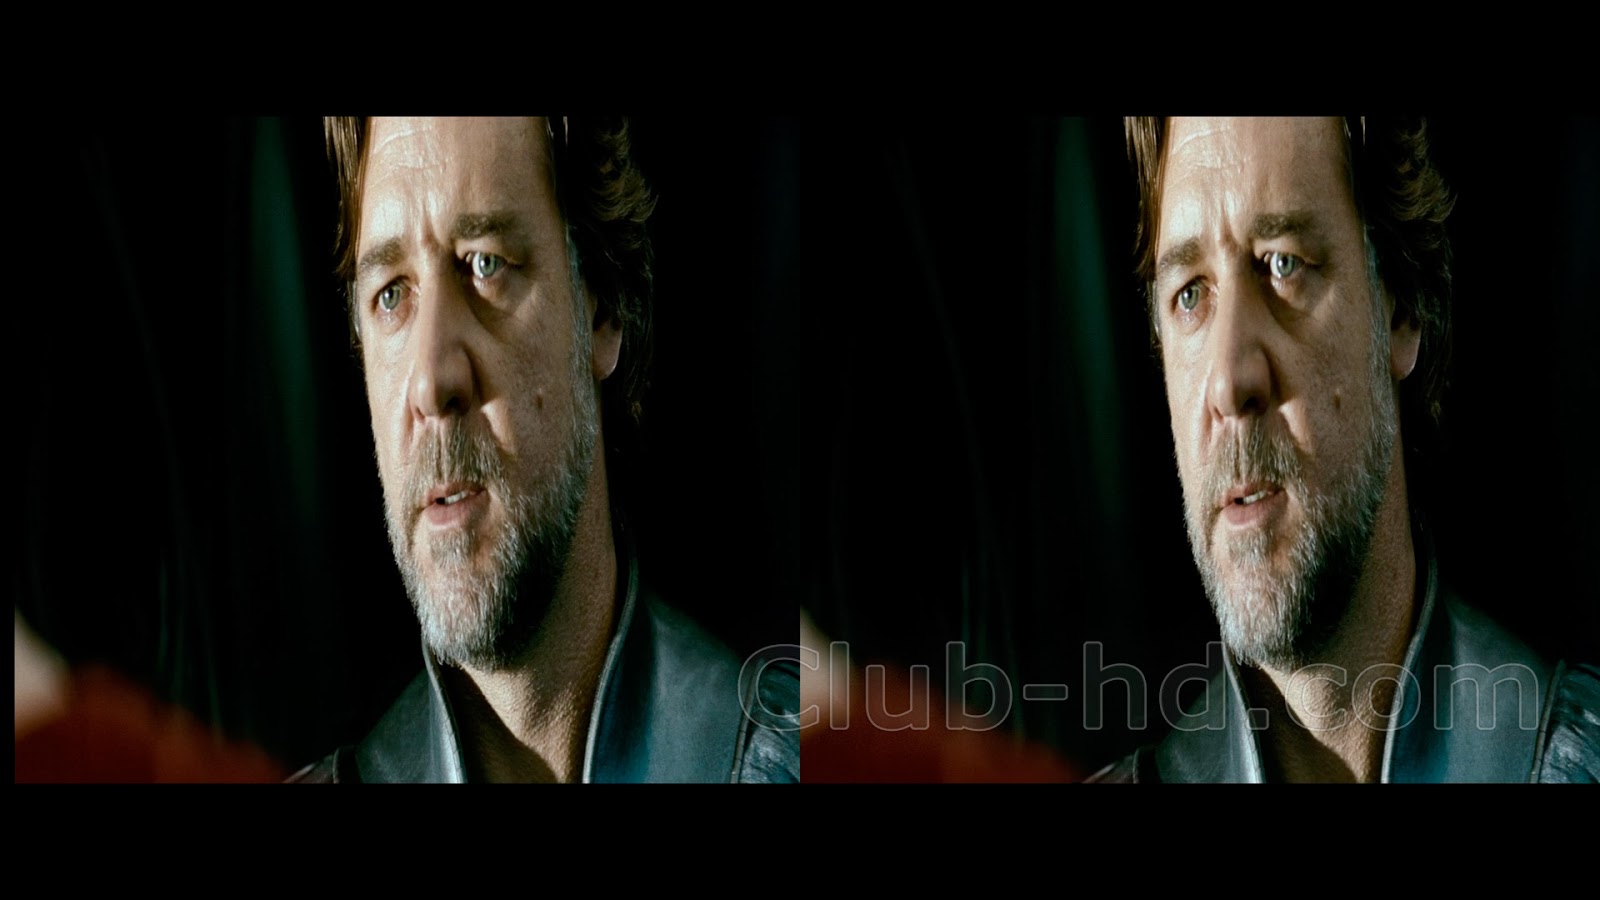 Man of Steel (2013) 3D H-SBS 1080p BDRip Dual Latino-Inglés [Subt. Esp] (Ciencia ficción. Fantástico. Acción)